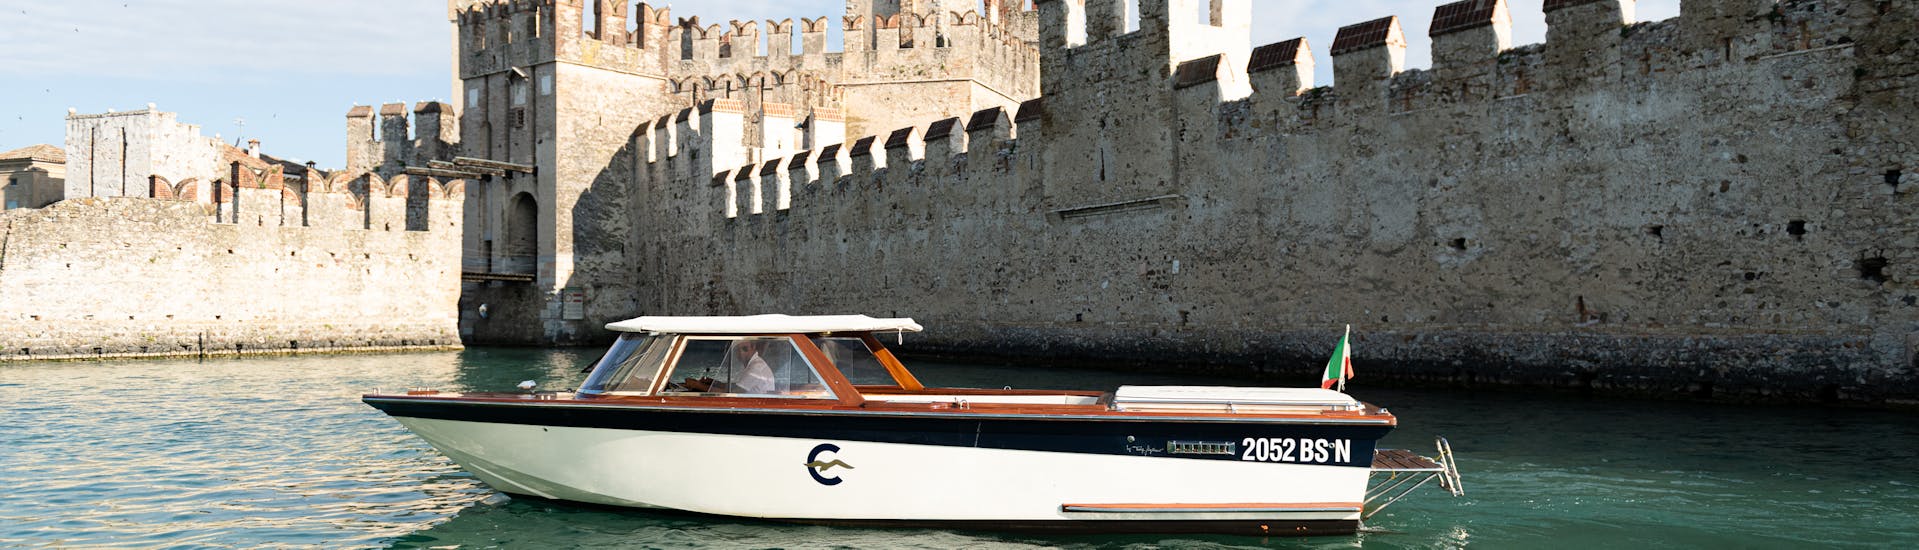 Un bateau en bois de style vénitien devant les murs du château Scaliger à Sirmione, utilisé lors de la Balade privée en bateau à Isola del Garda, Manerba del Garda & Sirmione avec Consolini Boats.